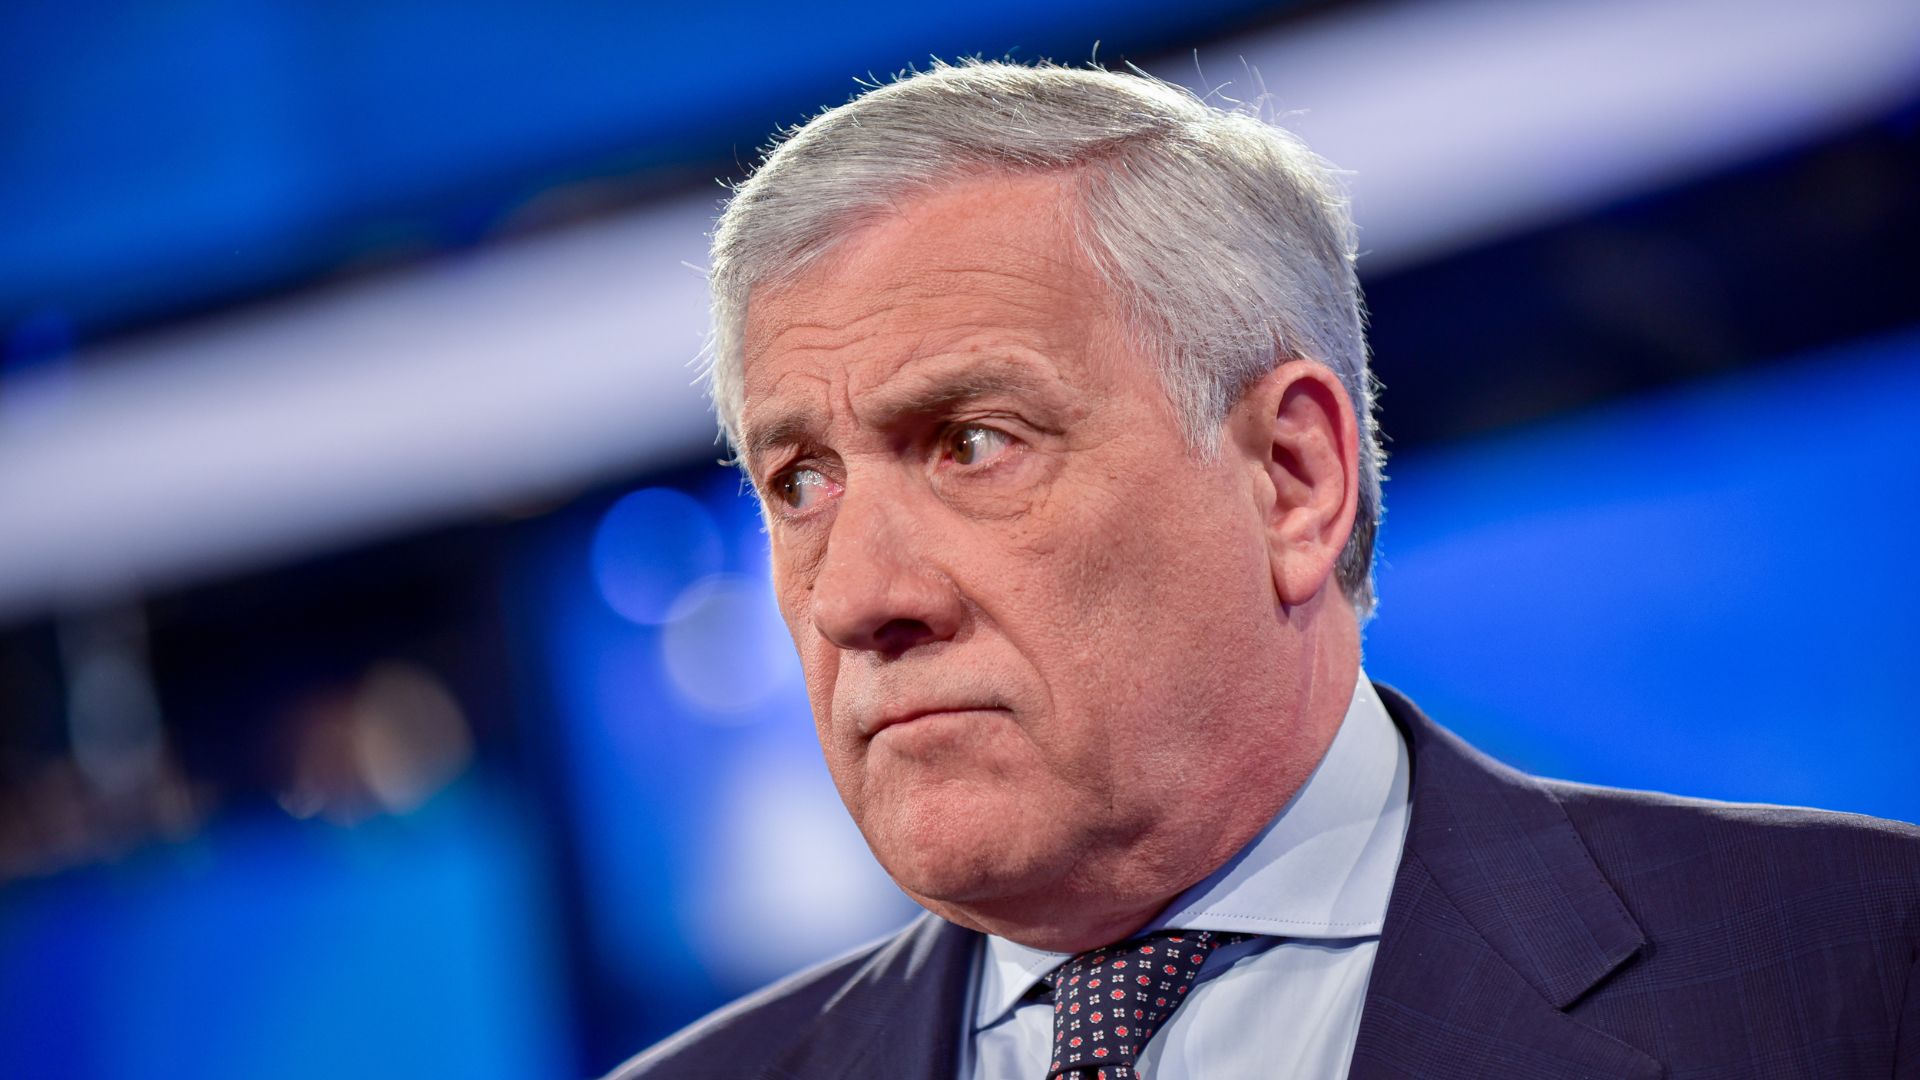 Sull’Autonomia continuano le proteste, Tajani: “Non siamo mai stati chiusi al dialogo”